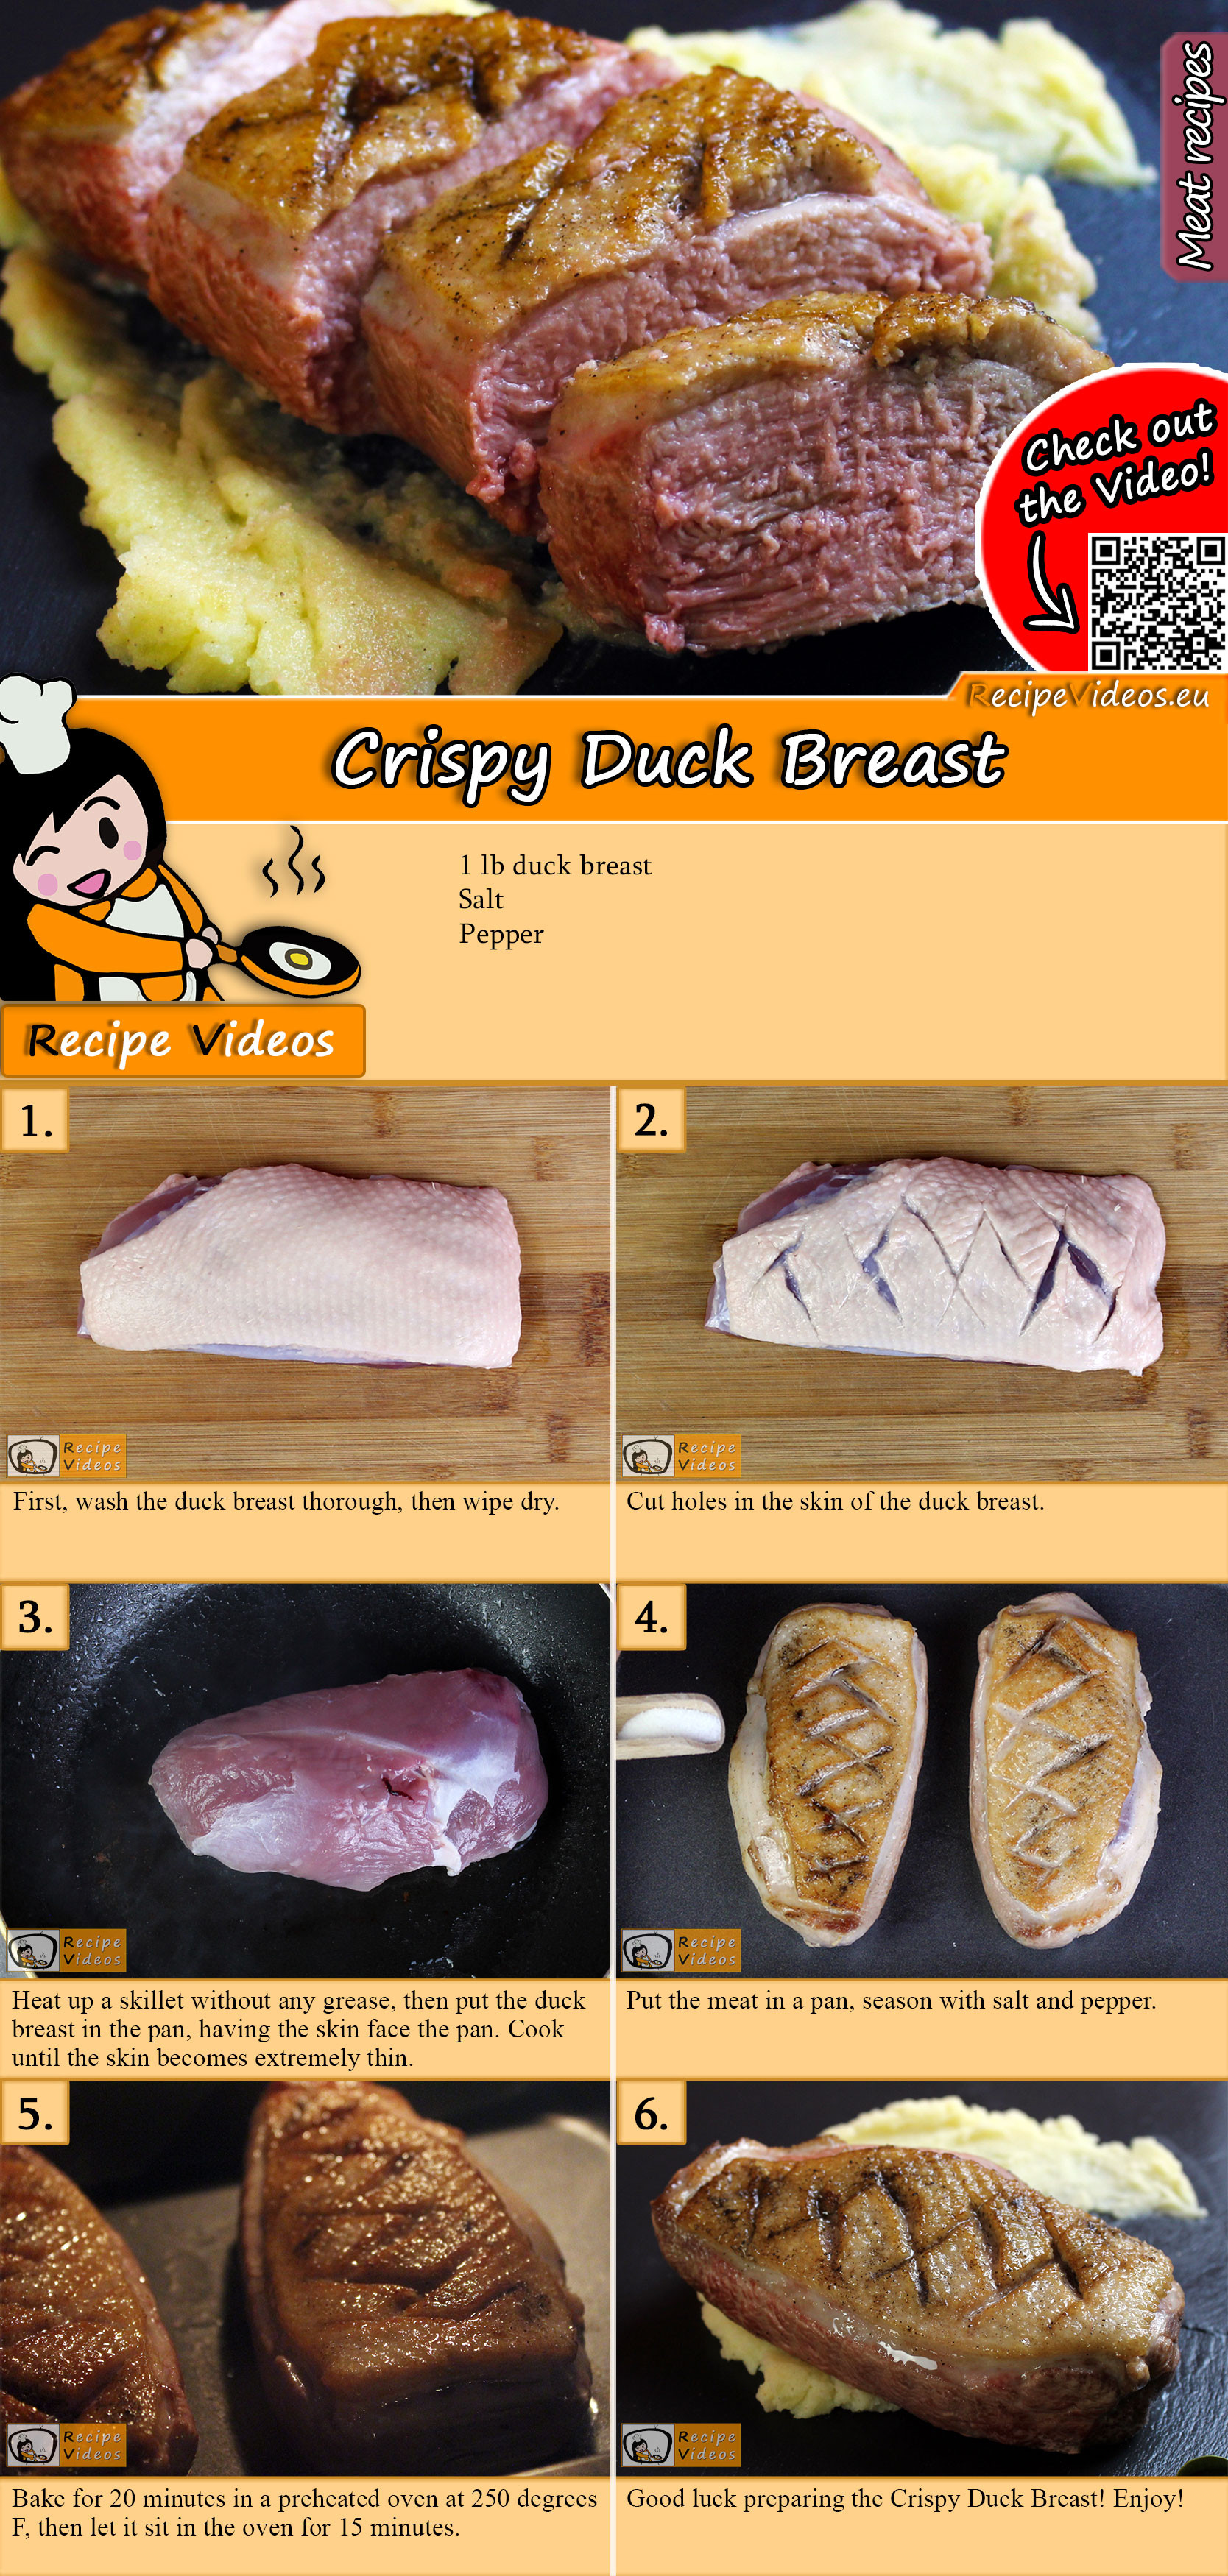 Crispy Duck Breast recipe with video